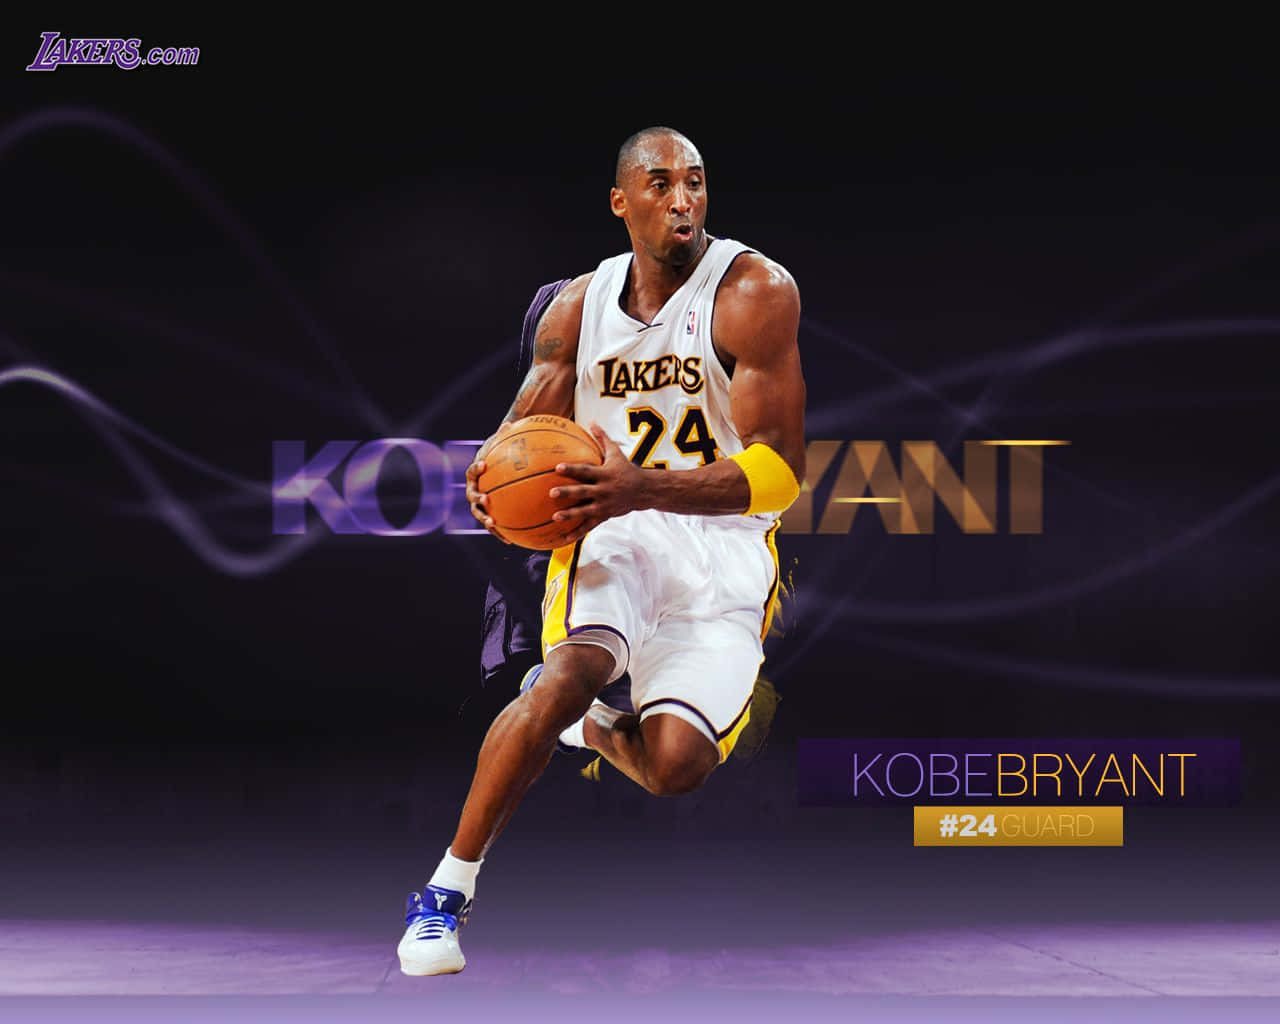 Kobebryant Baggrunde - Kobe Bryant Baggrunde